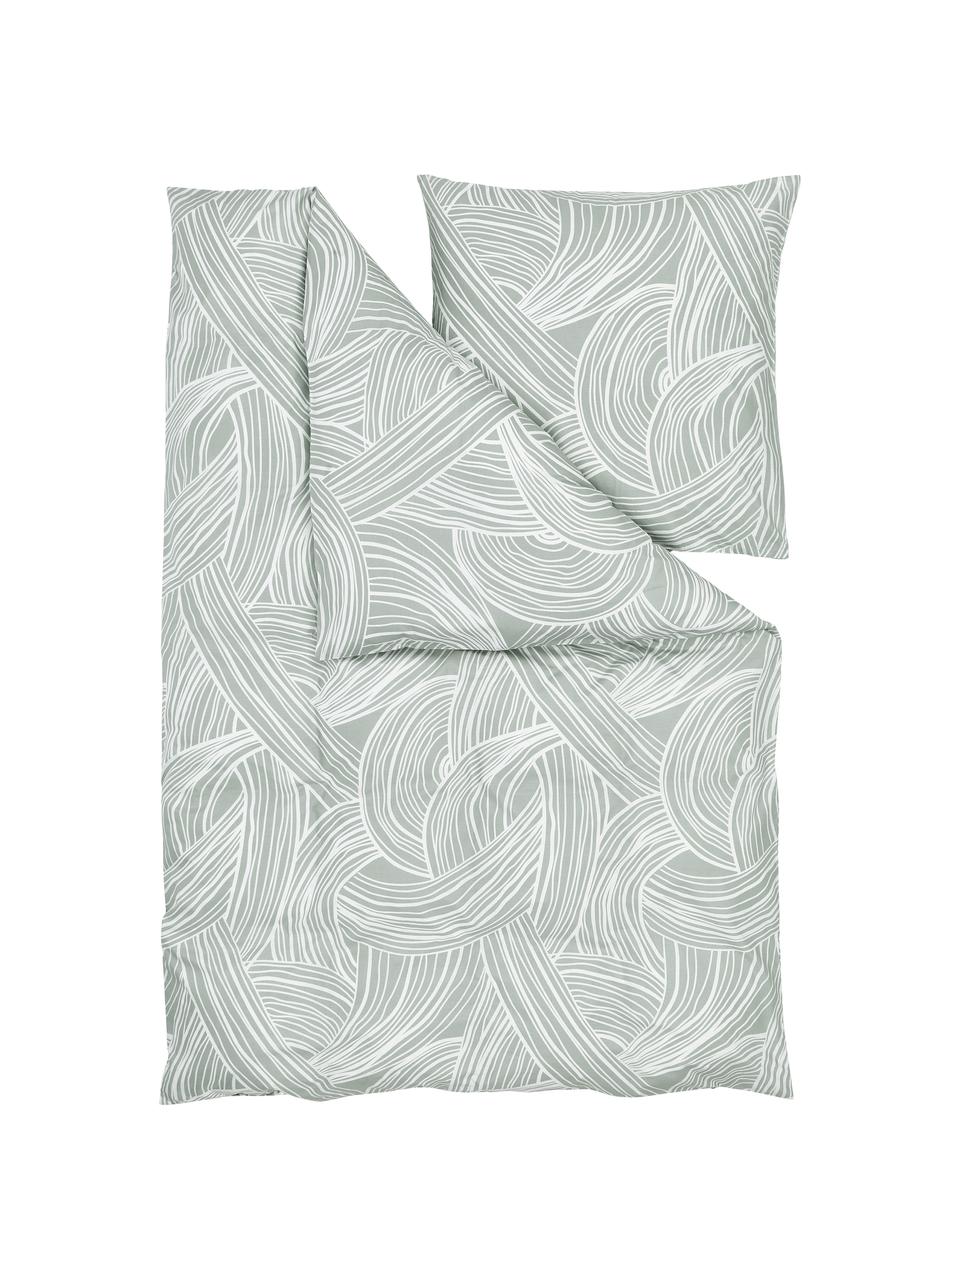 Pościel z bawełny Korey, Zielony, kremowobiały, 135 x 200 cm + 1 poduszka 80 x 80 cm